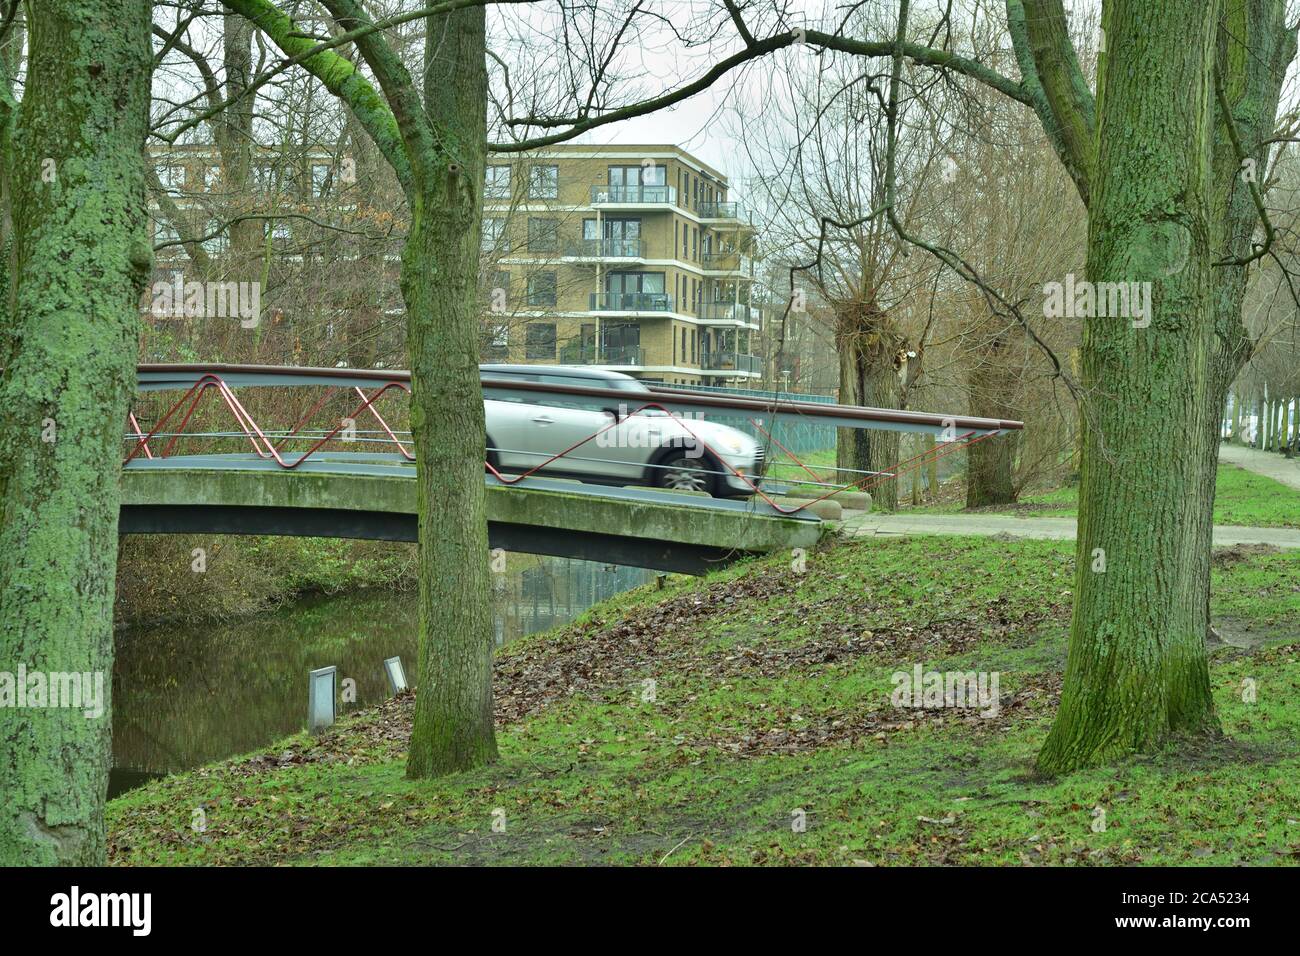 Un coche en movimiento conduce sobre el puente del canal a las casas residenciales y los árboles. Primavera. Foto de stock